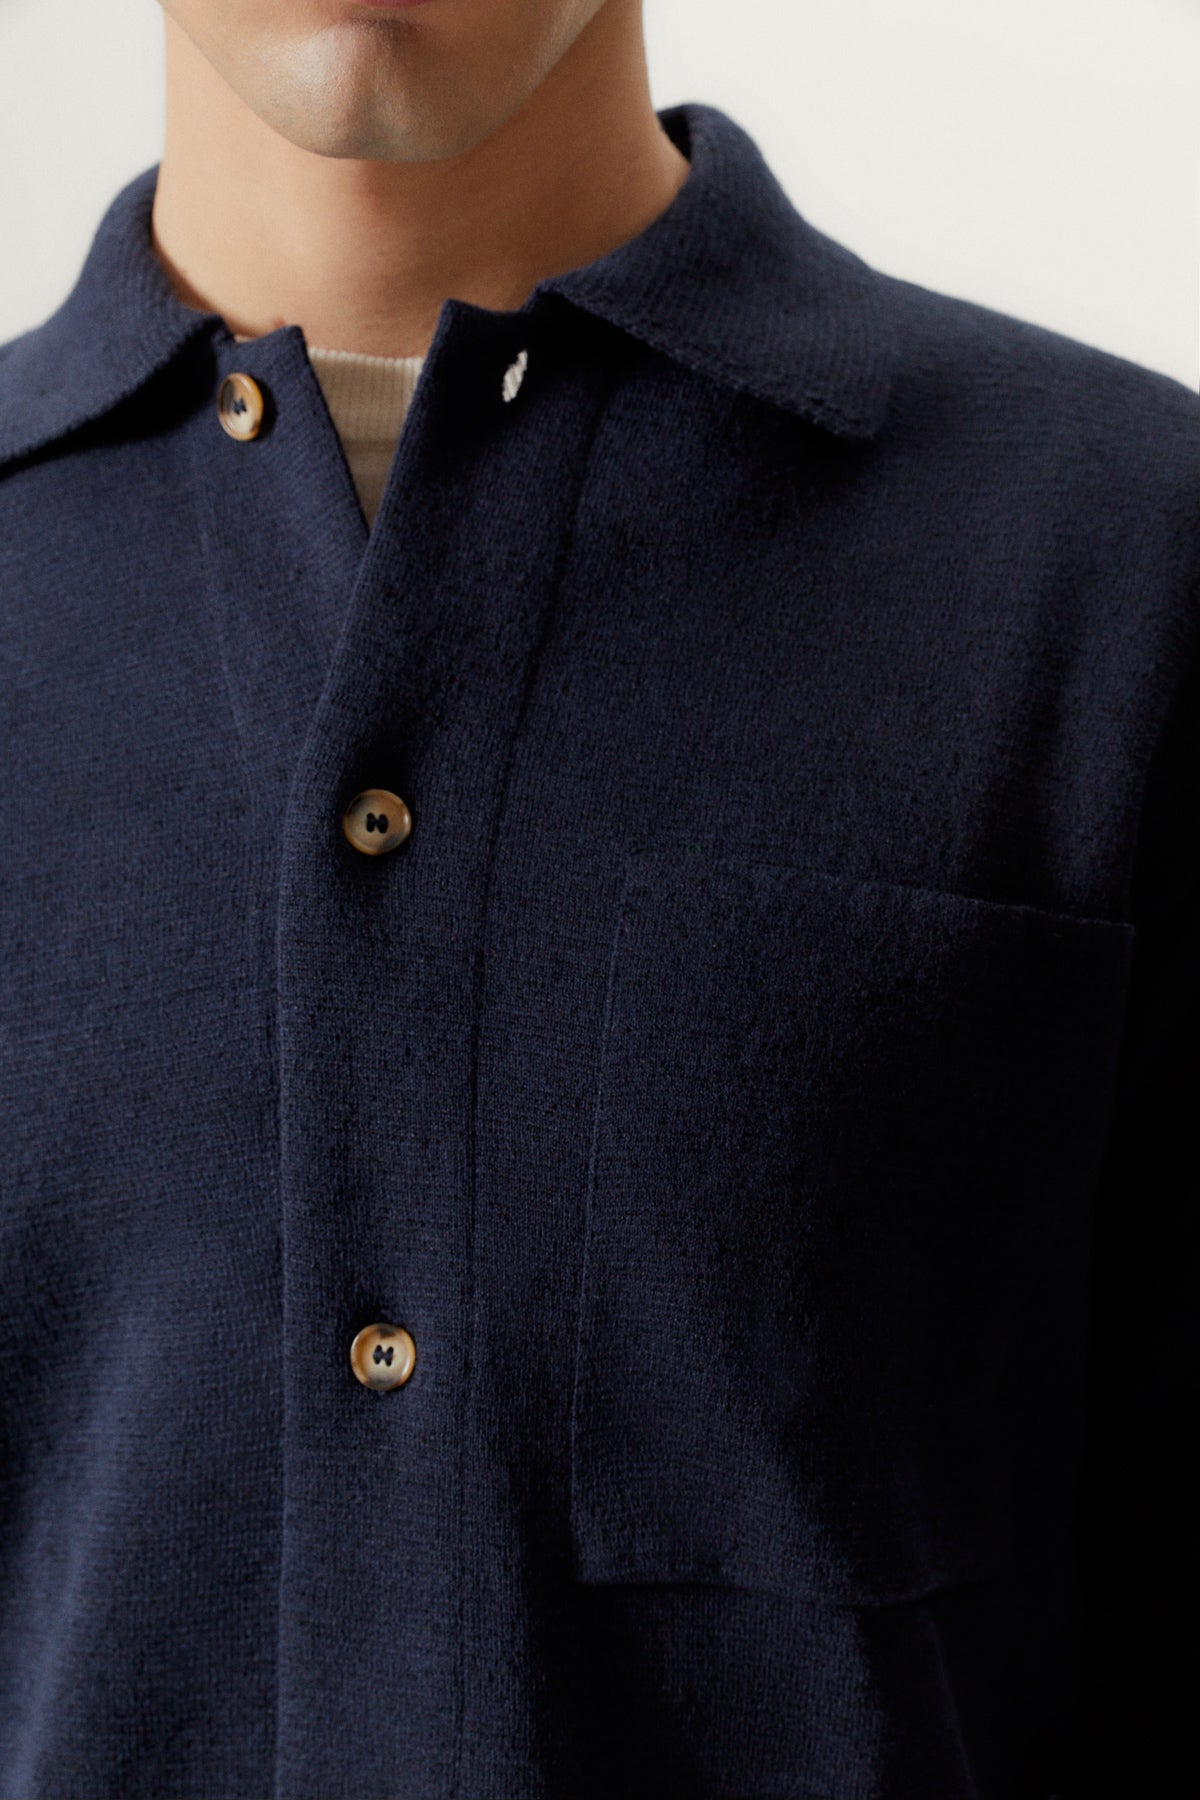 Blue Navy | The Linen Cotton Lightweight Overshirt